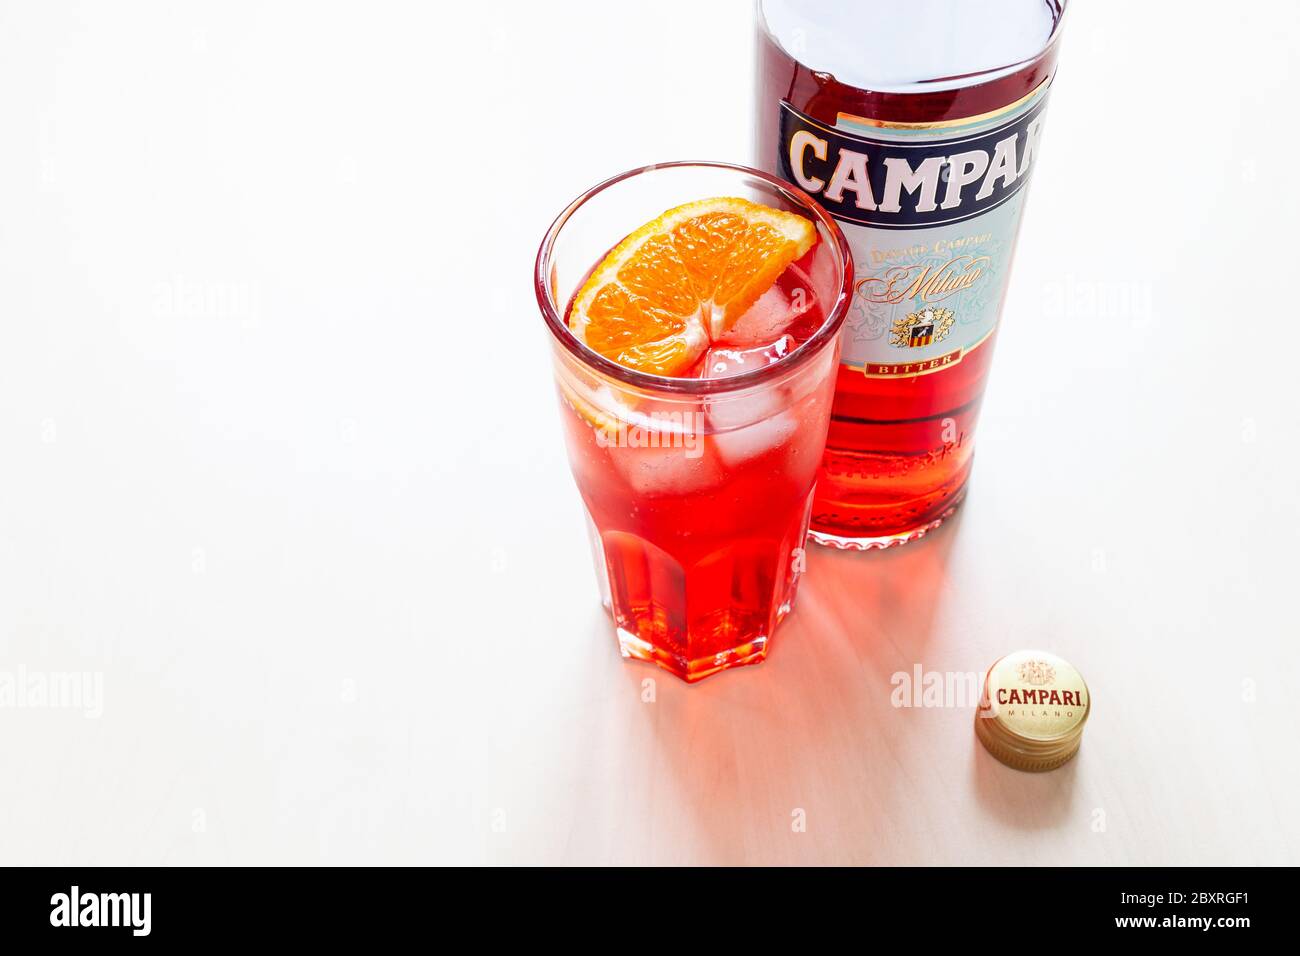 MOSCA, RUSSIA - 4 GIUGNO 2020: Berretto, bicchiere con cocktail e bottiglia di Campari amaro a tavola. Campari è un liquore alcolico italiano appartenente a Davide C. Foto Stock